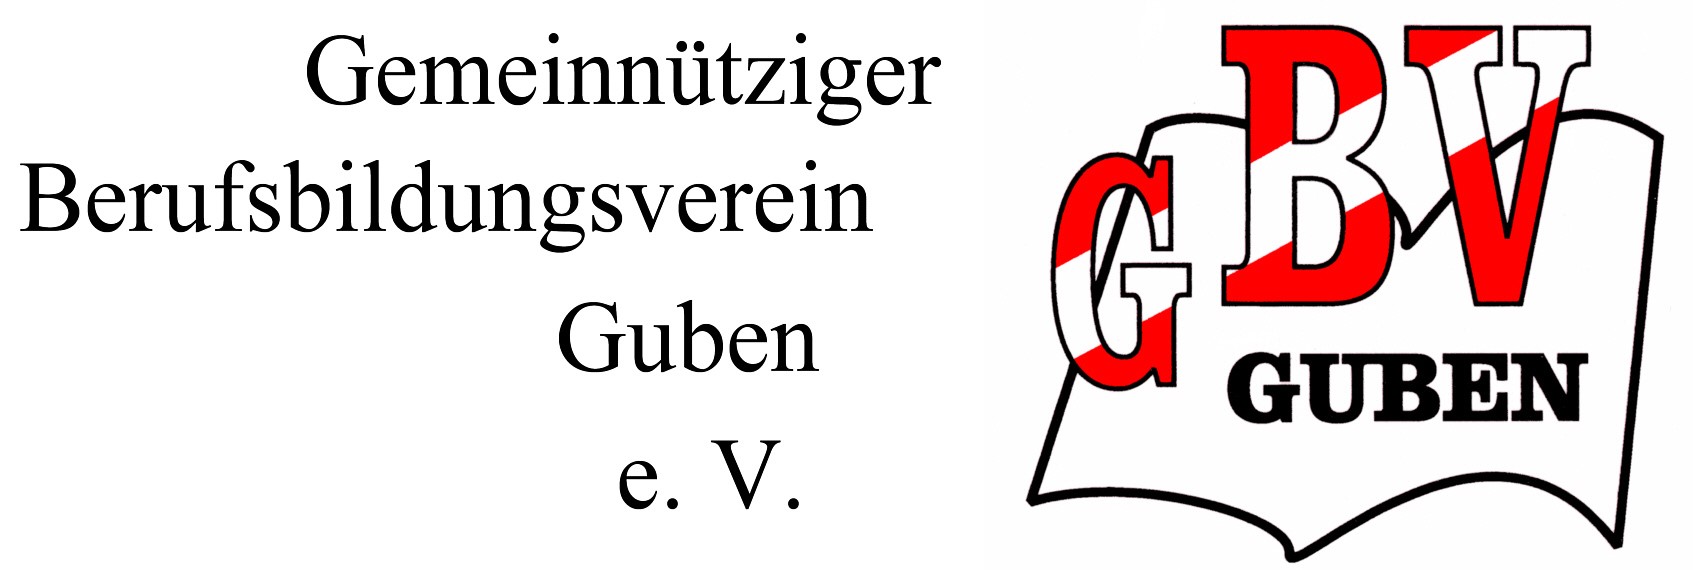 Logo des Gemeinnützigen Berufsbildungsverins Guben e. V., Kurzname: GBV Guben